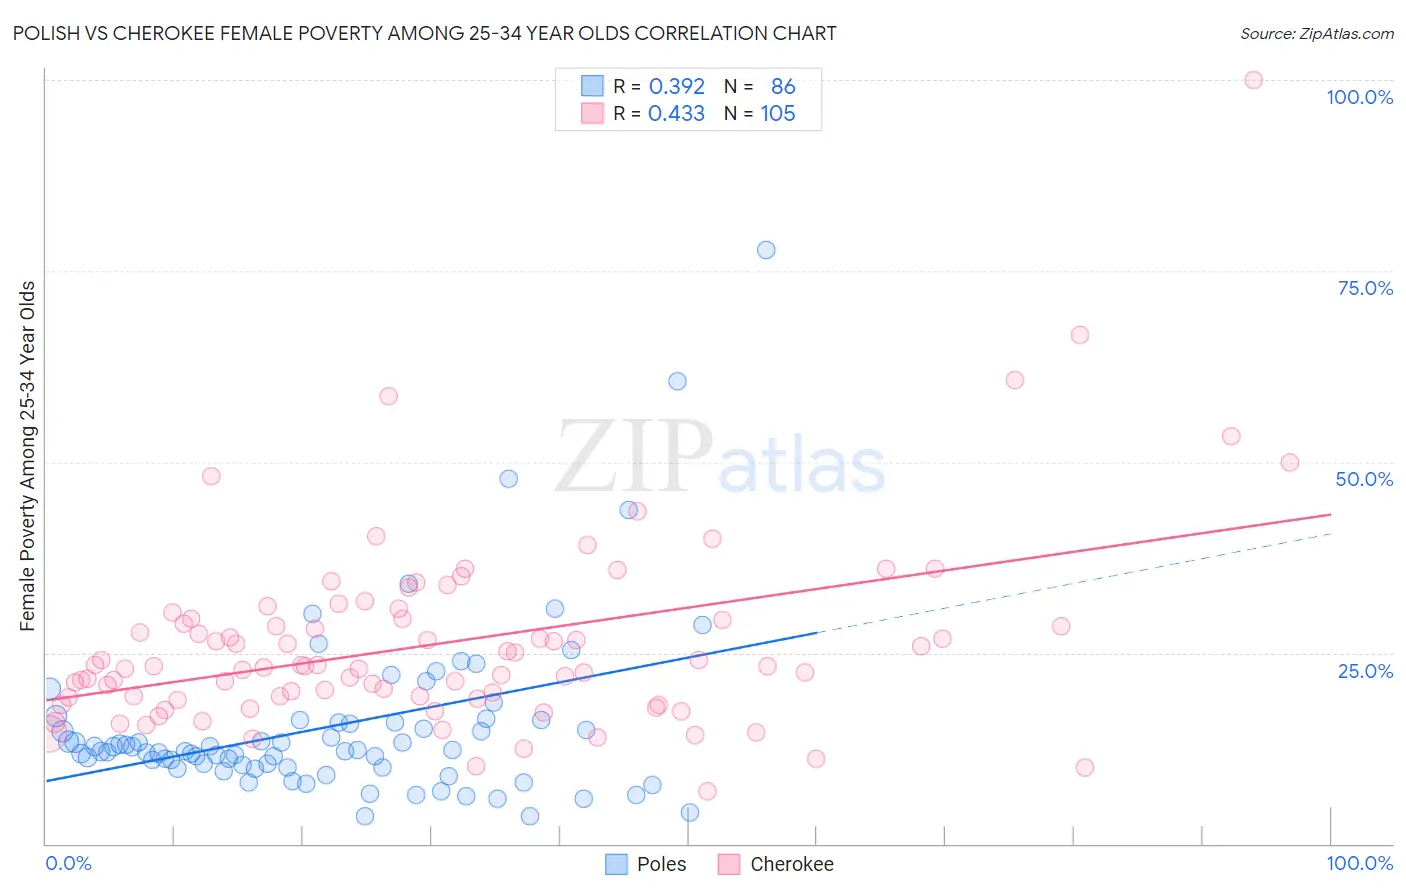 Polish vs Cherokee Female Poverty Among 25-34 Year Olds